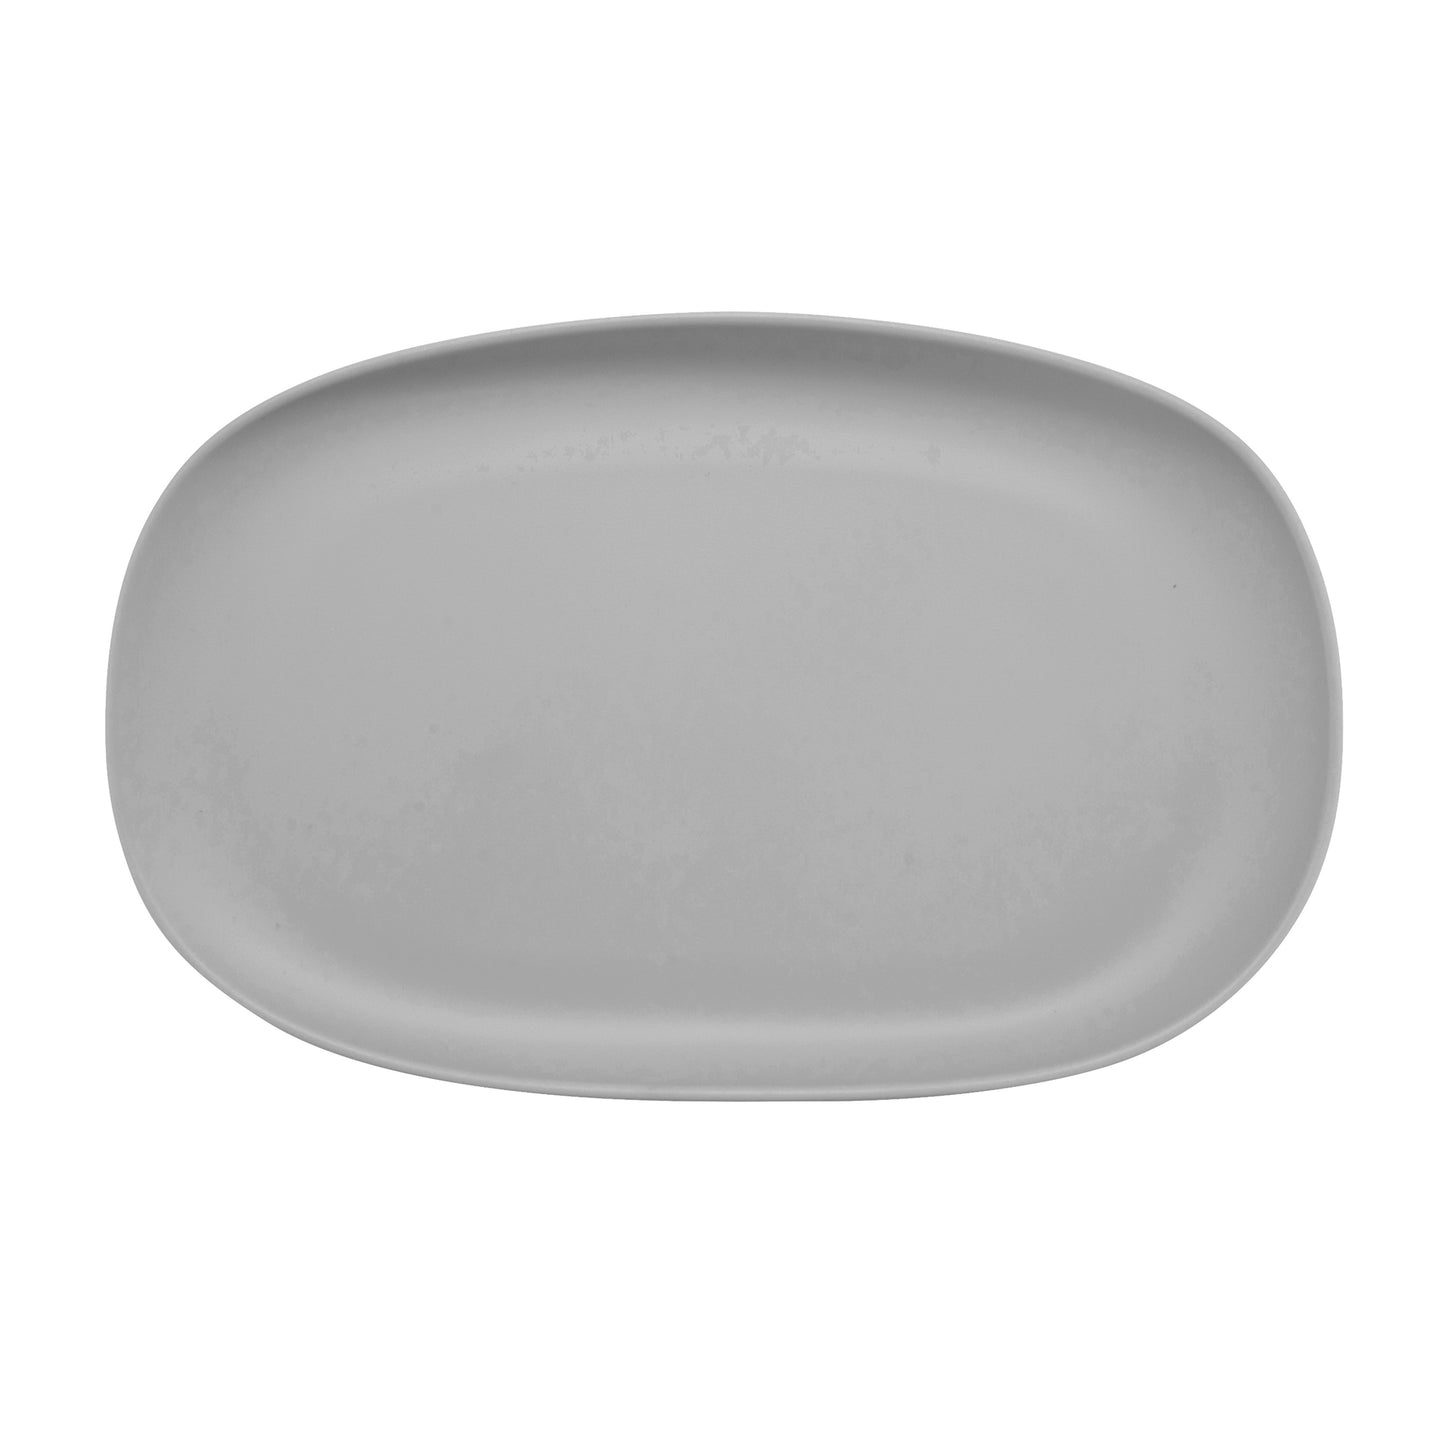 14" x 10" Light Gray, Melamine, Oval Coupe Platter, 1.24" H, G.E.T. Riverstone (12 Pack)